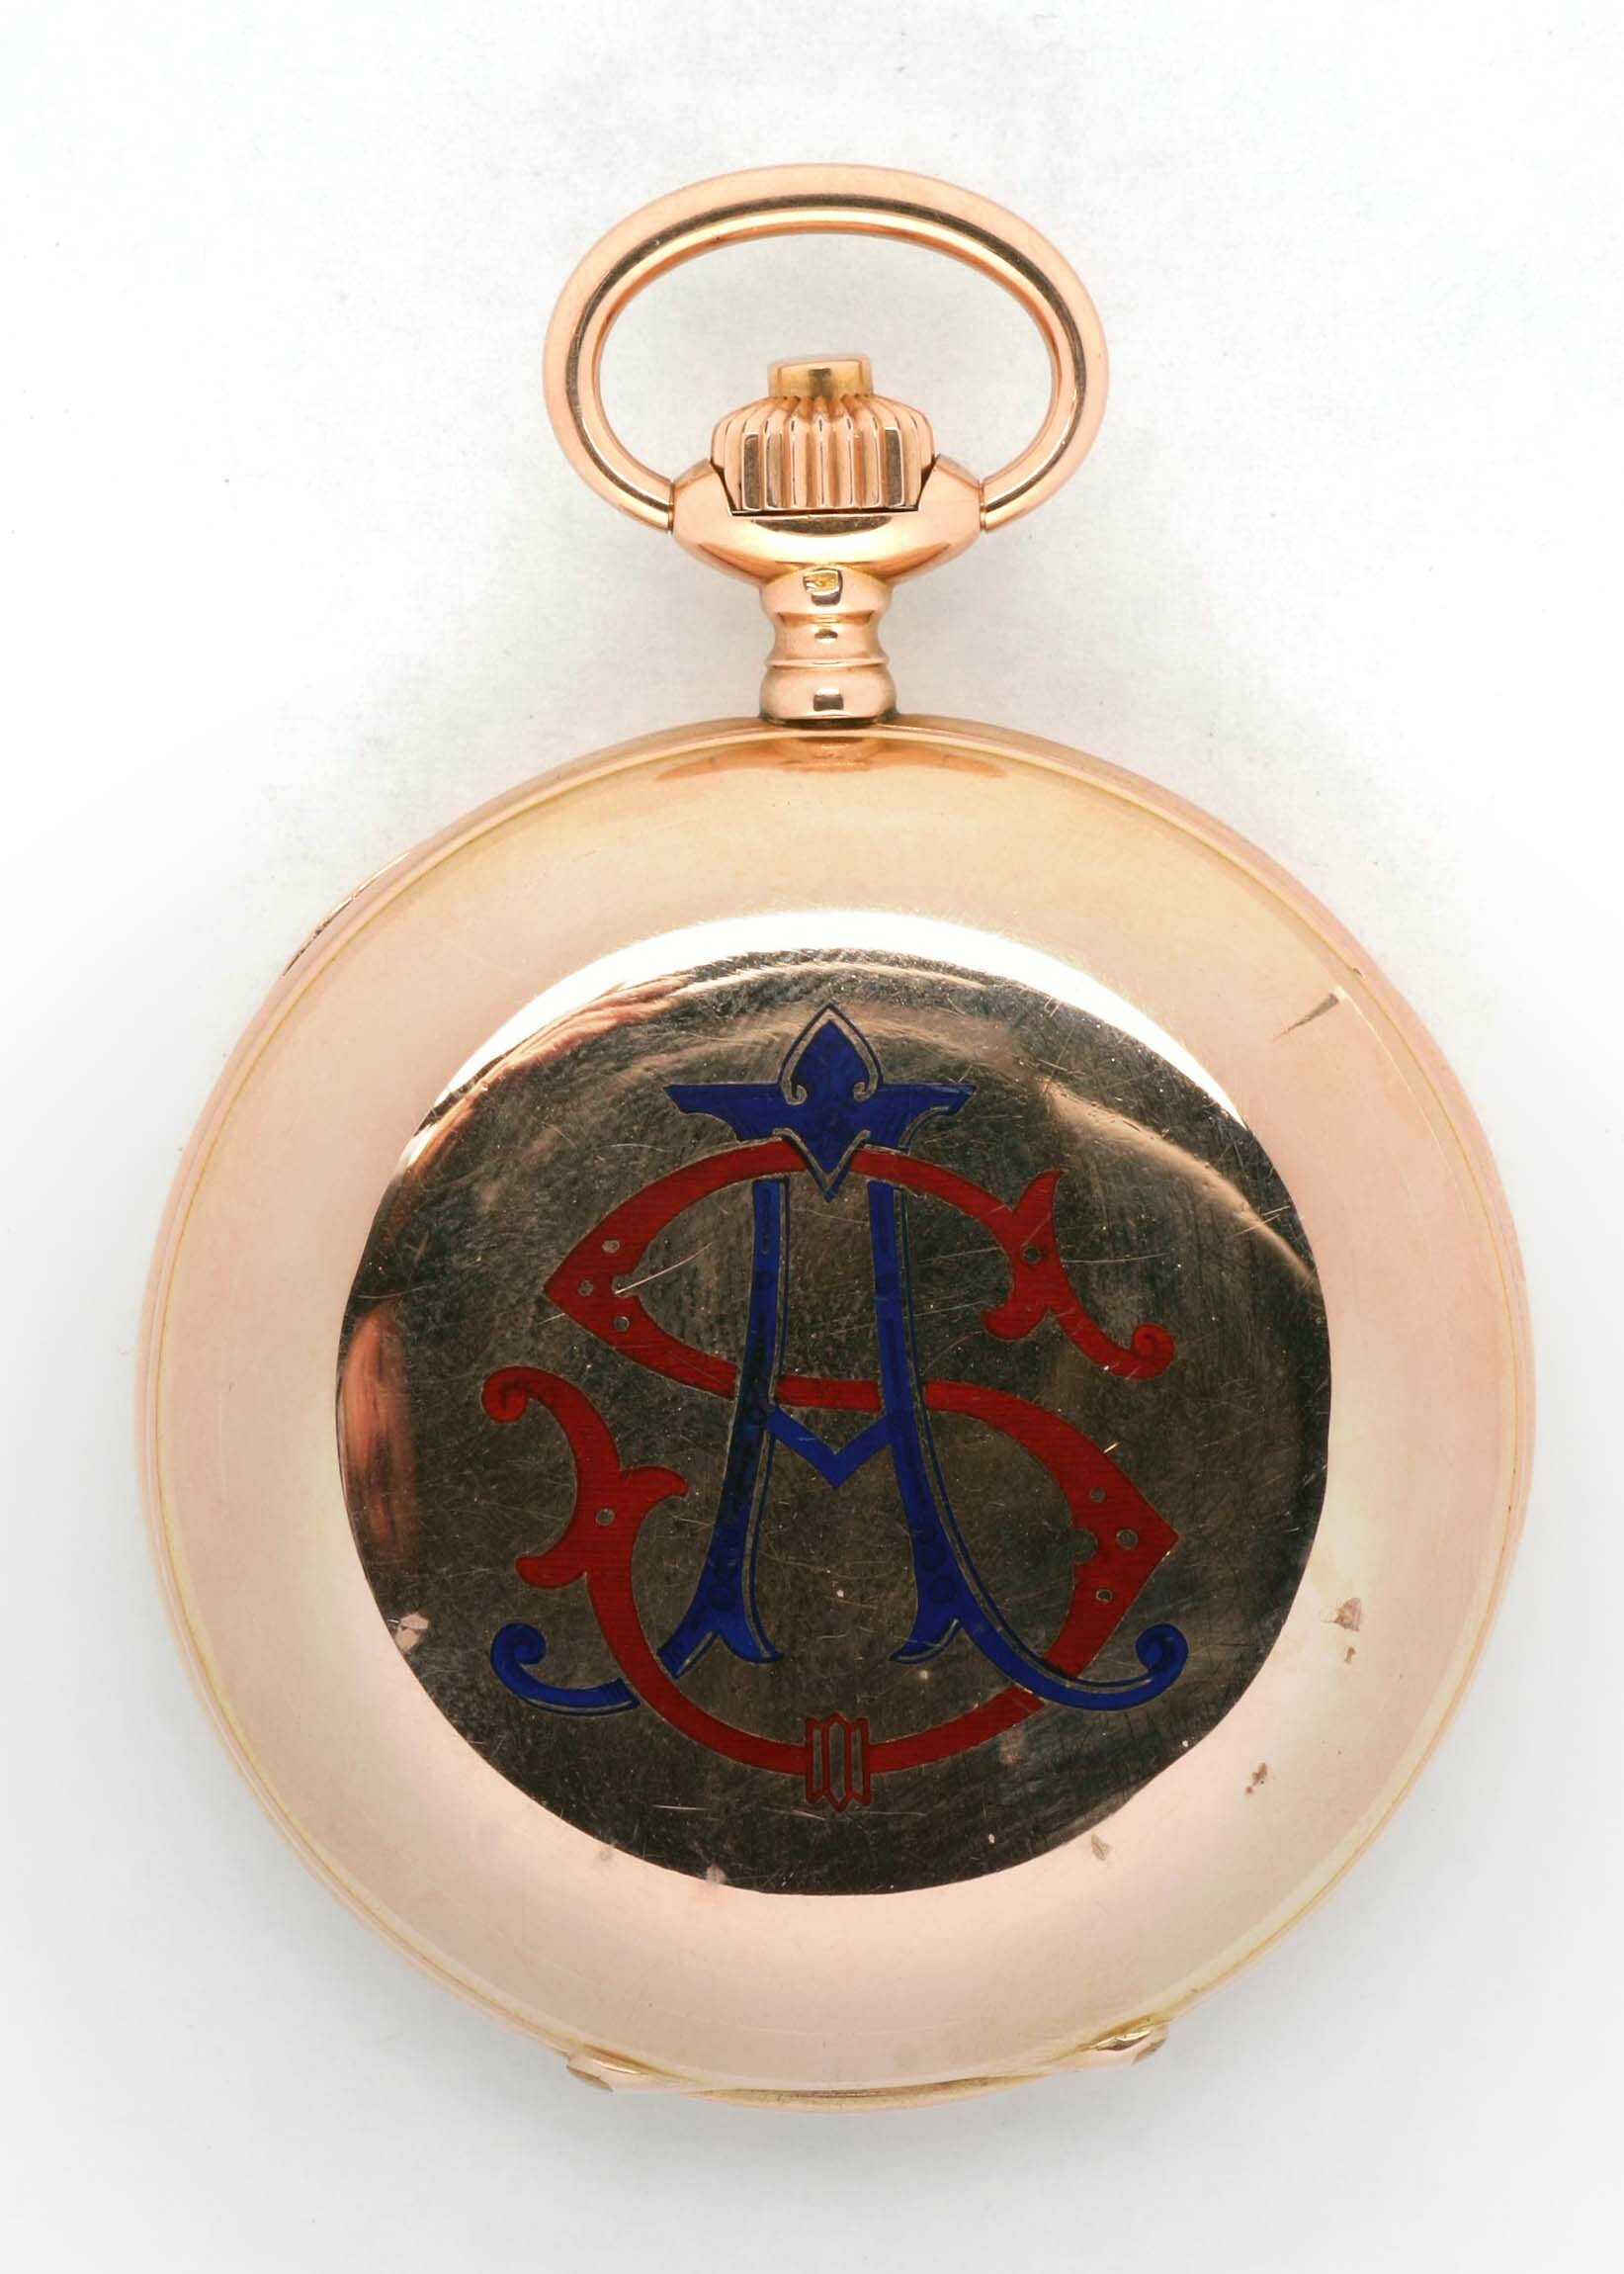 Taschenuhr, A. Eppner und Co., Silberberg, um 1900 (Deutsches Uhrenmuseum CC BY-SA)